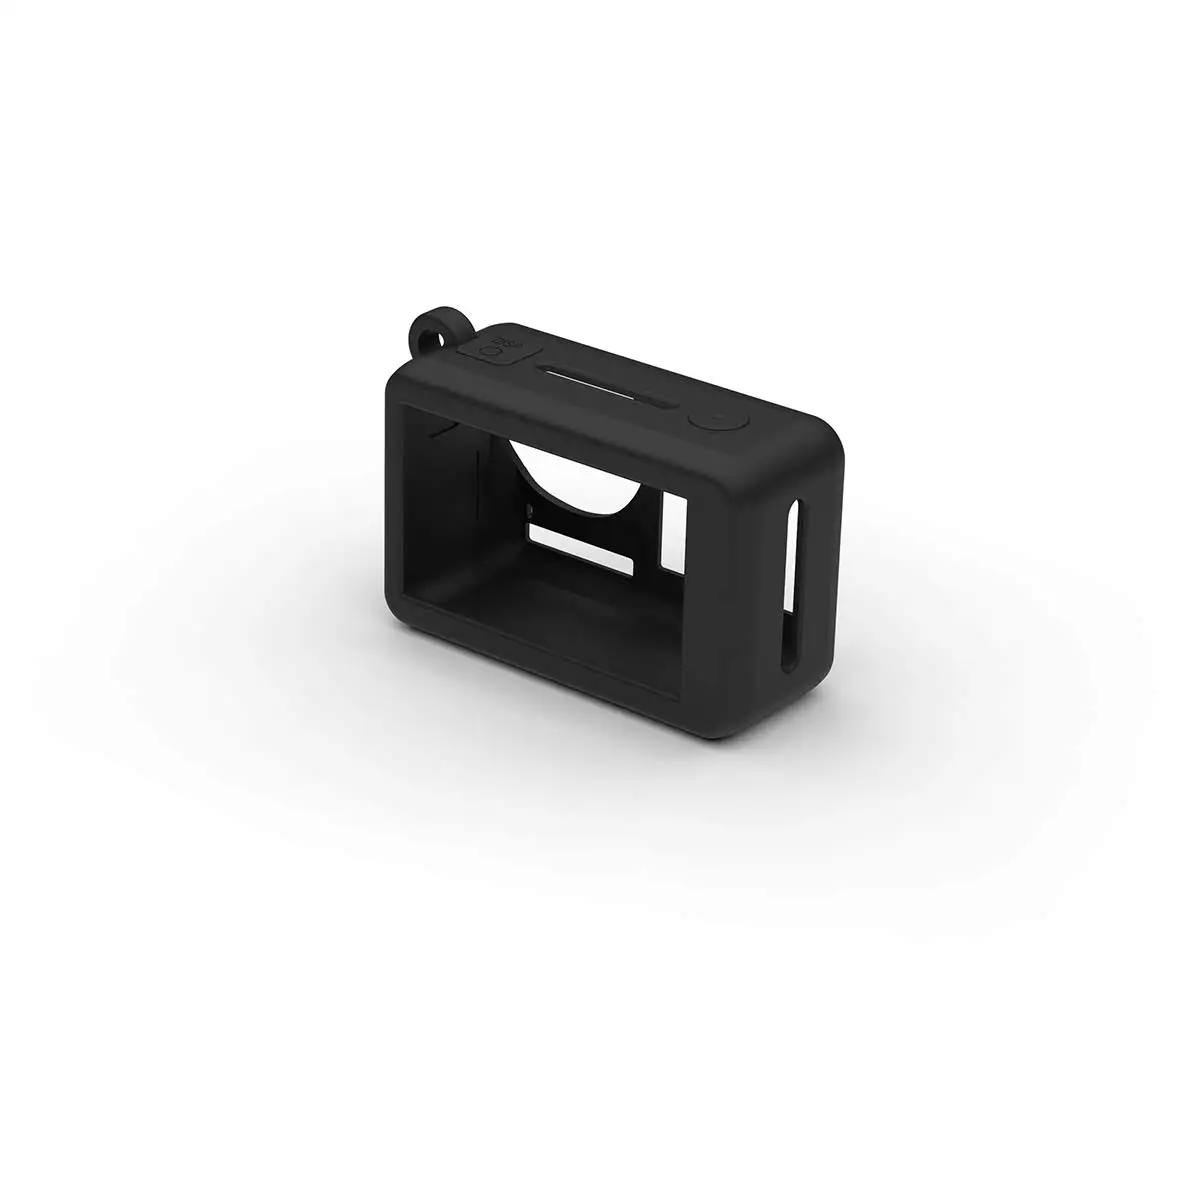 DJI osmo чехол для экшн-камеры защитный силиконовый чехол Крышка для объектива черная крышка аксессуары для камеры